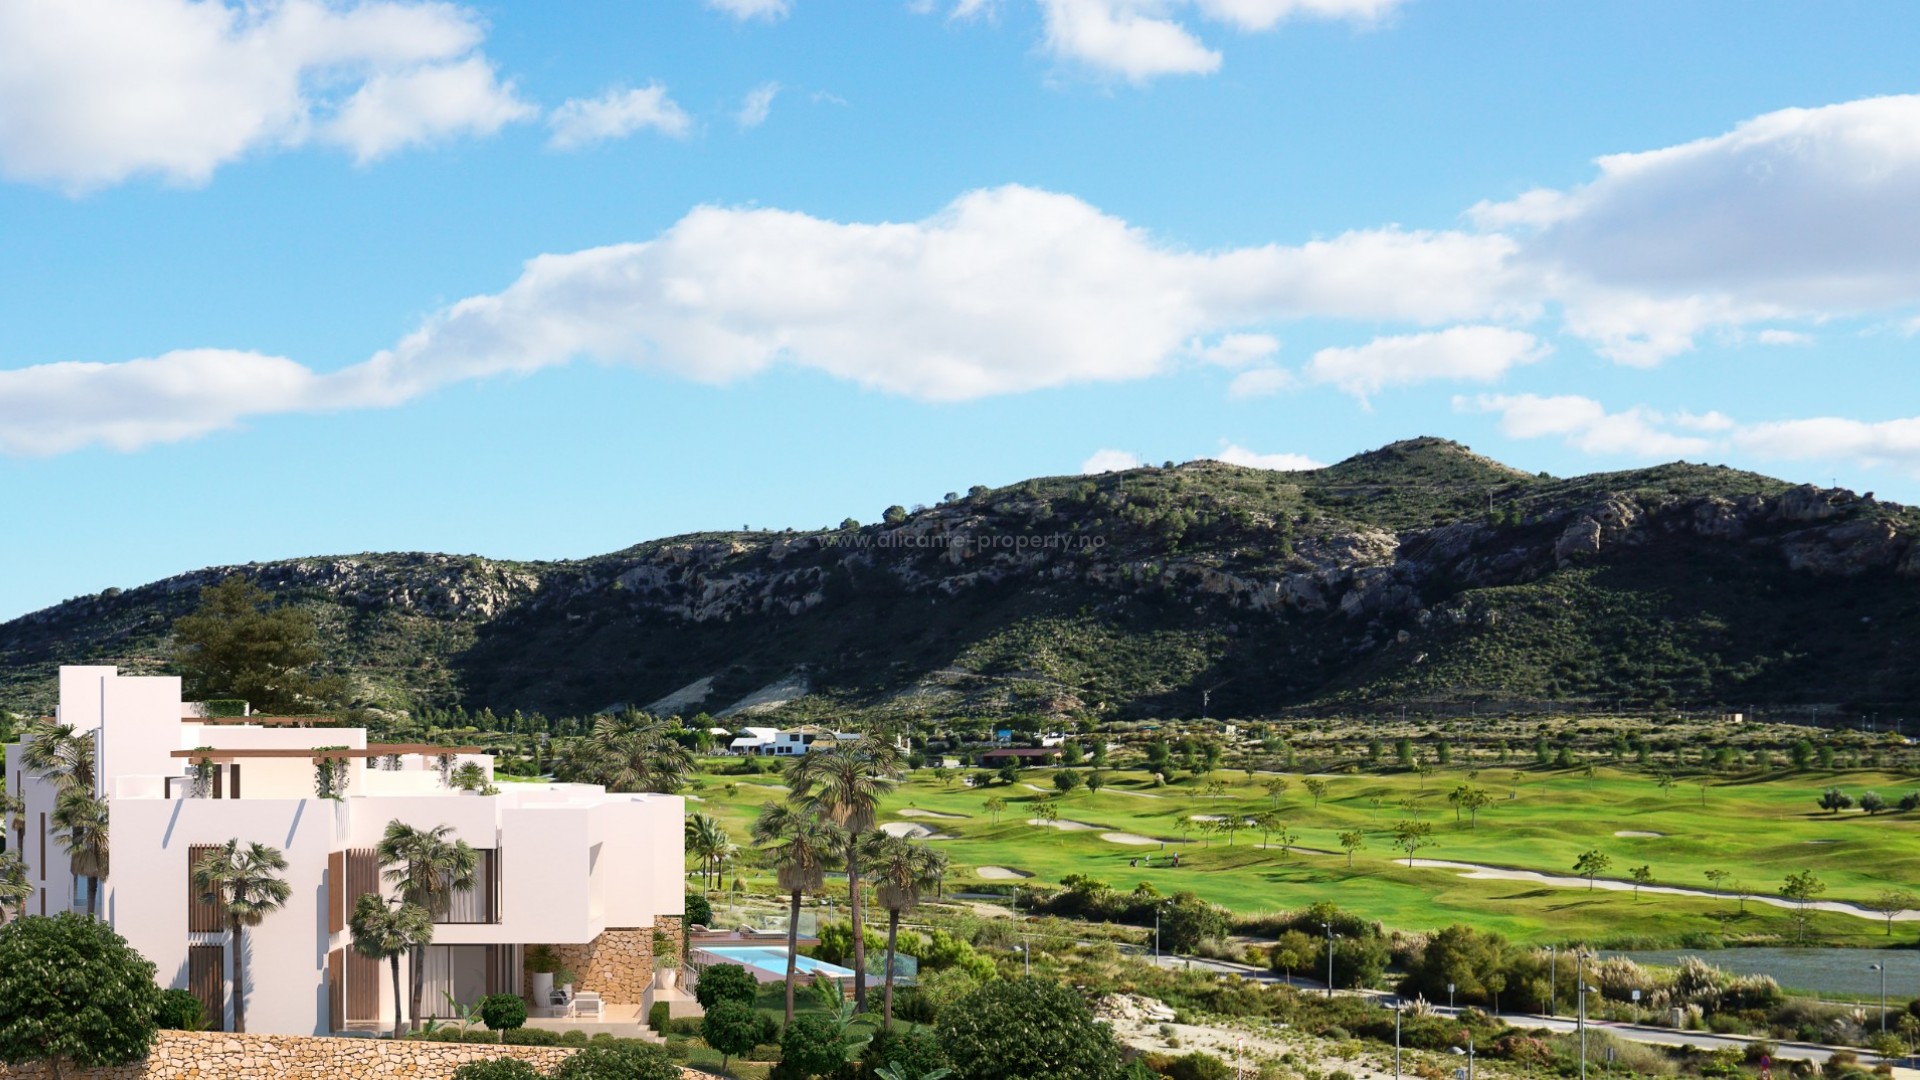 Leiligheter/rekkehus utsikt til Font del Llop golfbane, 2 og 3 sover.,solarium, pool.Leilighetene har et felles basseng og grønne områder. Privat parkering